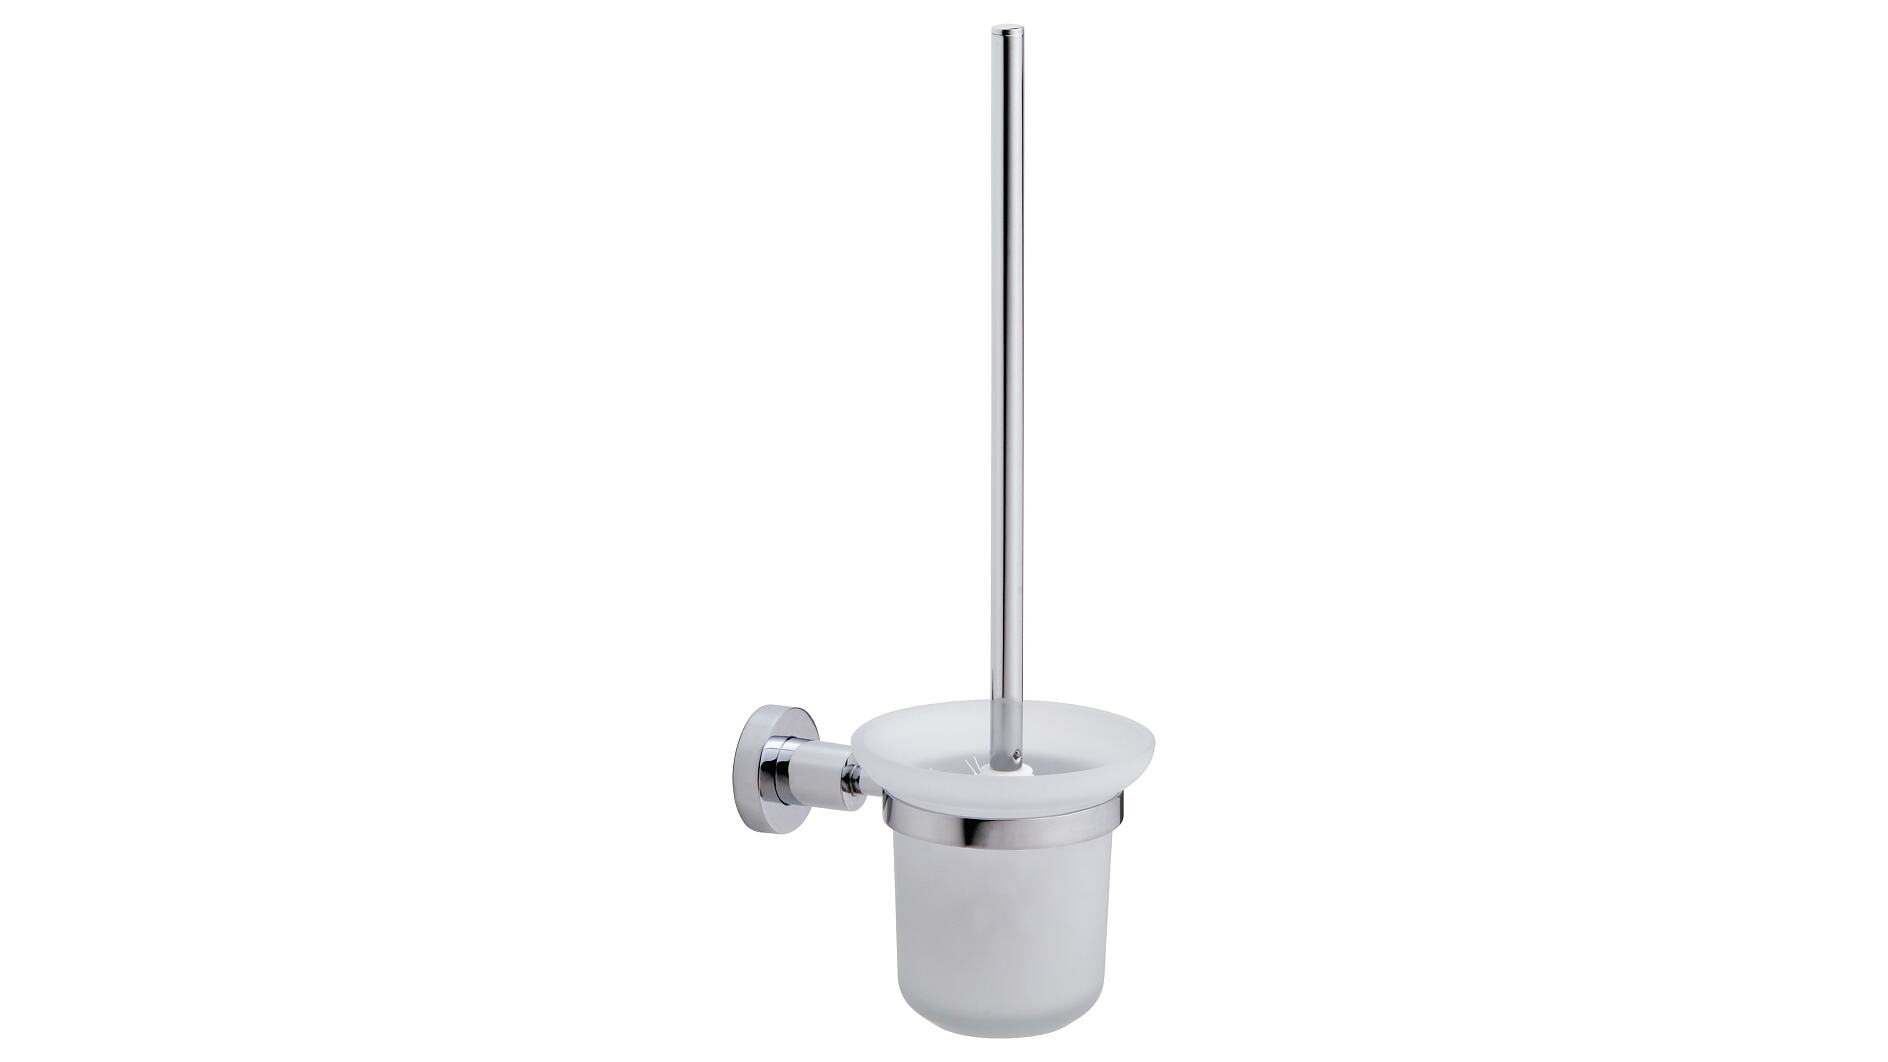 Convenient Toilet Brush Set Wall Mount or Floor Stand Waterproof Design